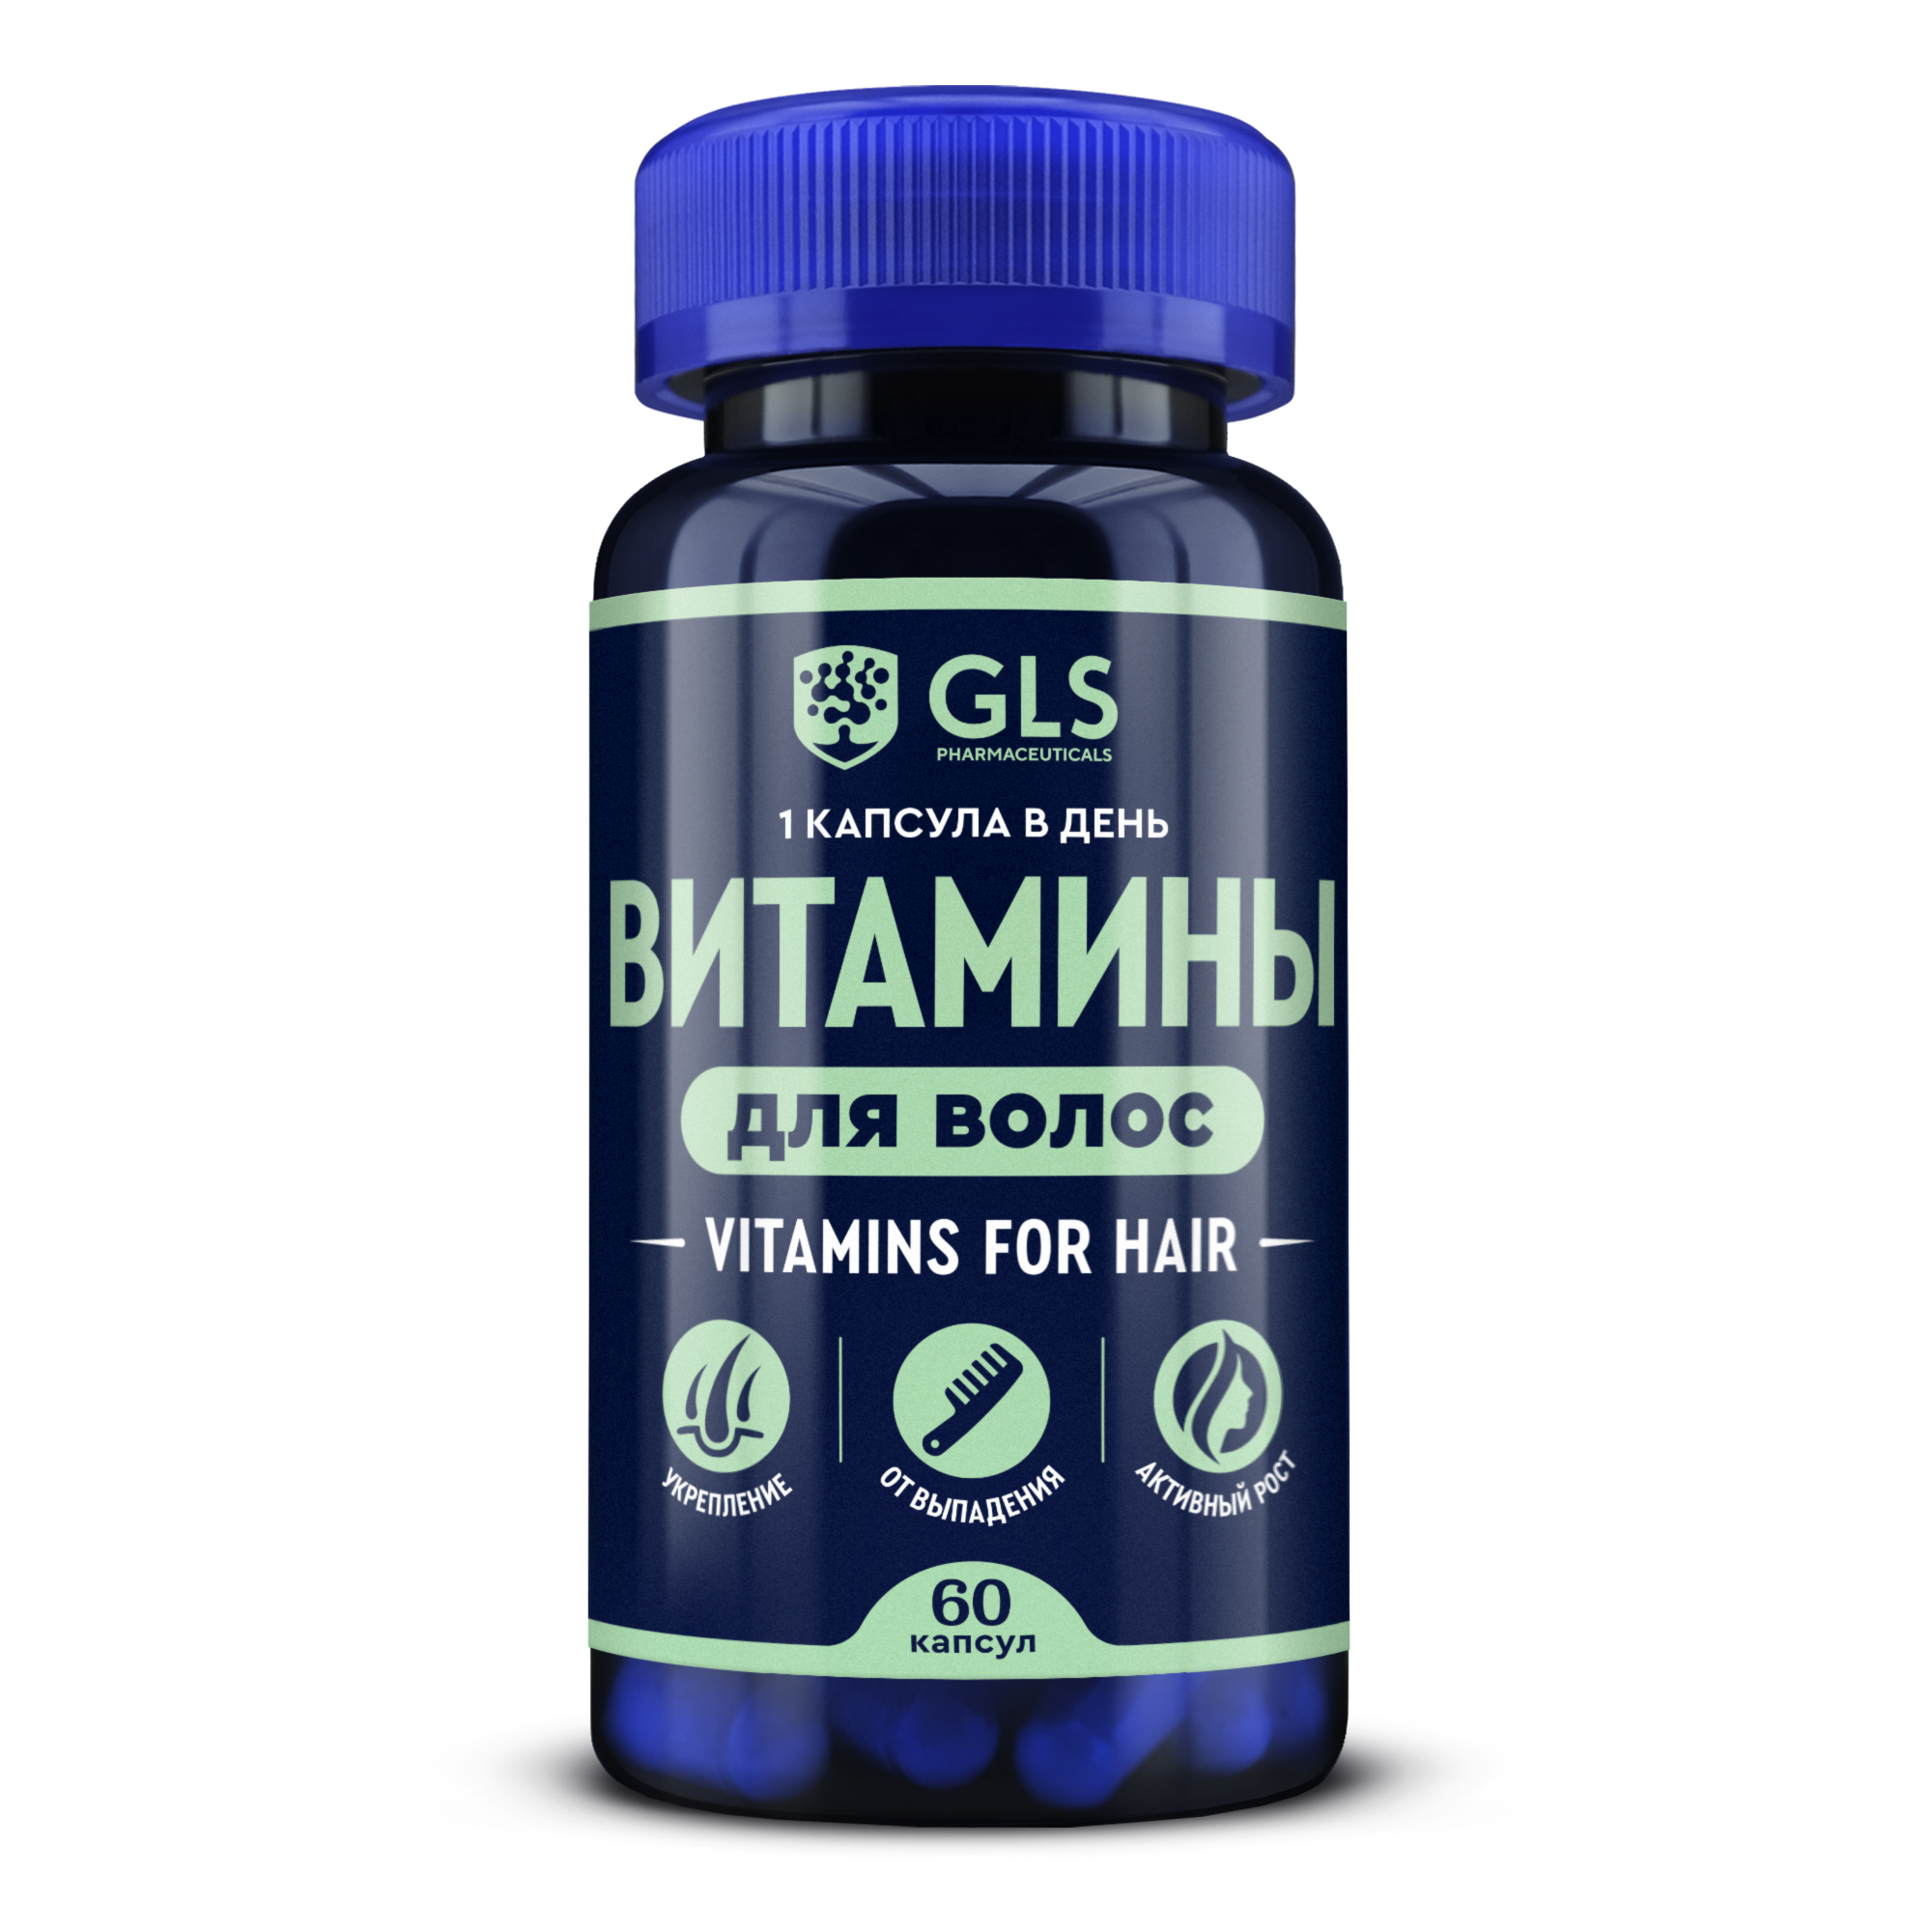 Gls витамин д3. GLS аминогам 60 Gaba. GLS Омега 3. Витамины GLS Pharmaceuticals. B5 GLS витамины.